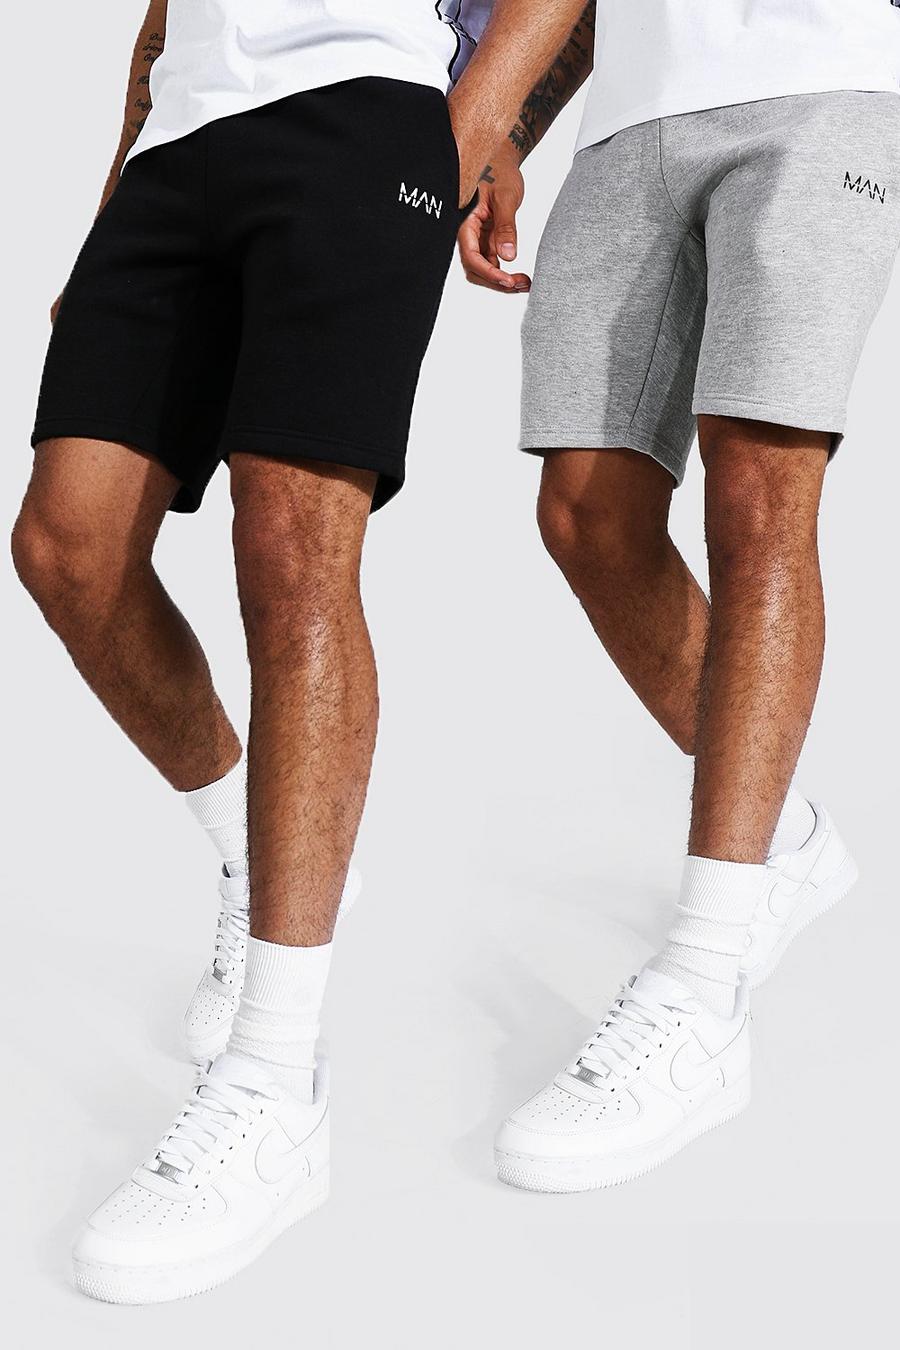 Multi Man Middellange Strakke Jersey Shorts (2 Stuks) image number 1